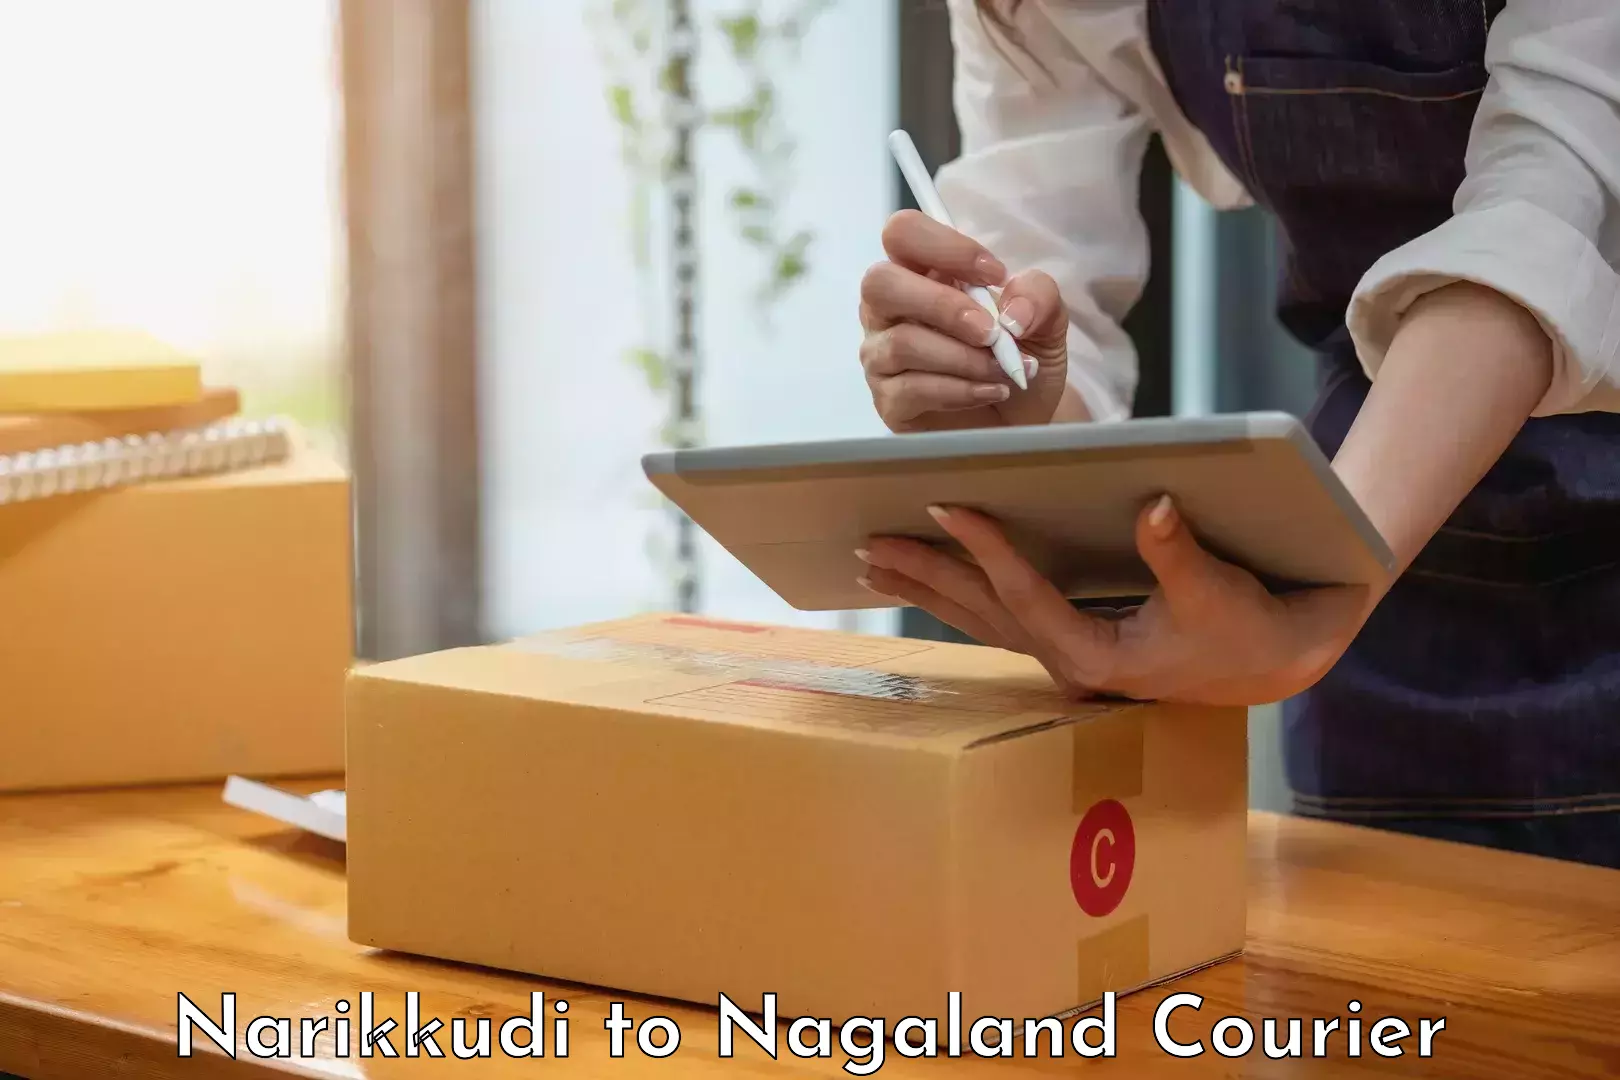 Courier app Narikkudi to Longleng